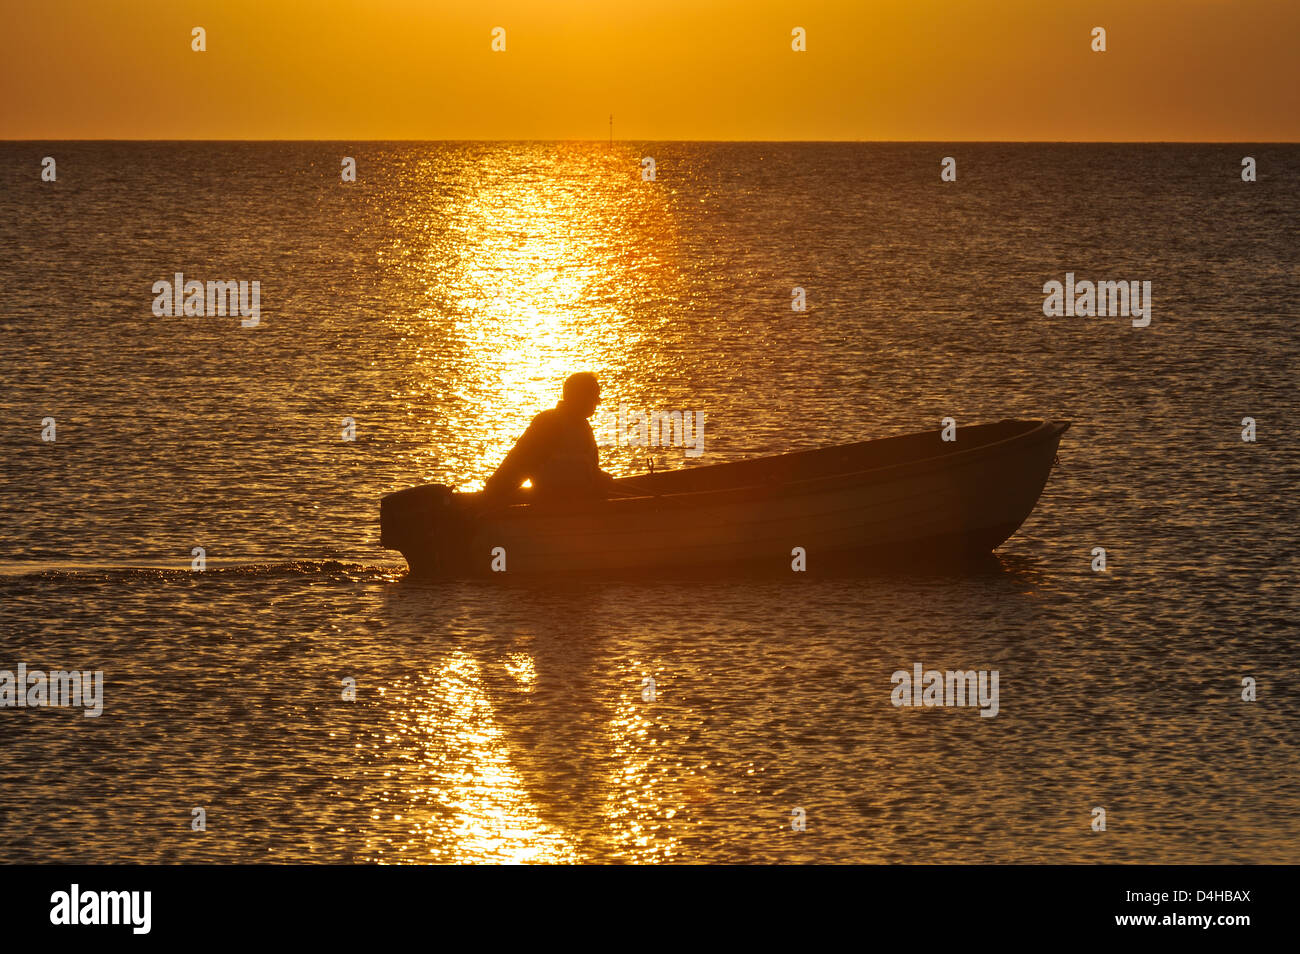 Persona in barca sul mare al tramonto, Bua, Halland, Svezia, Europa Foto Stock